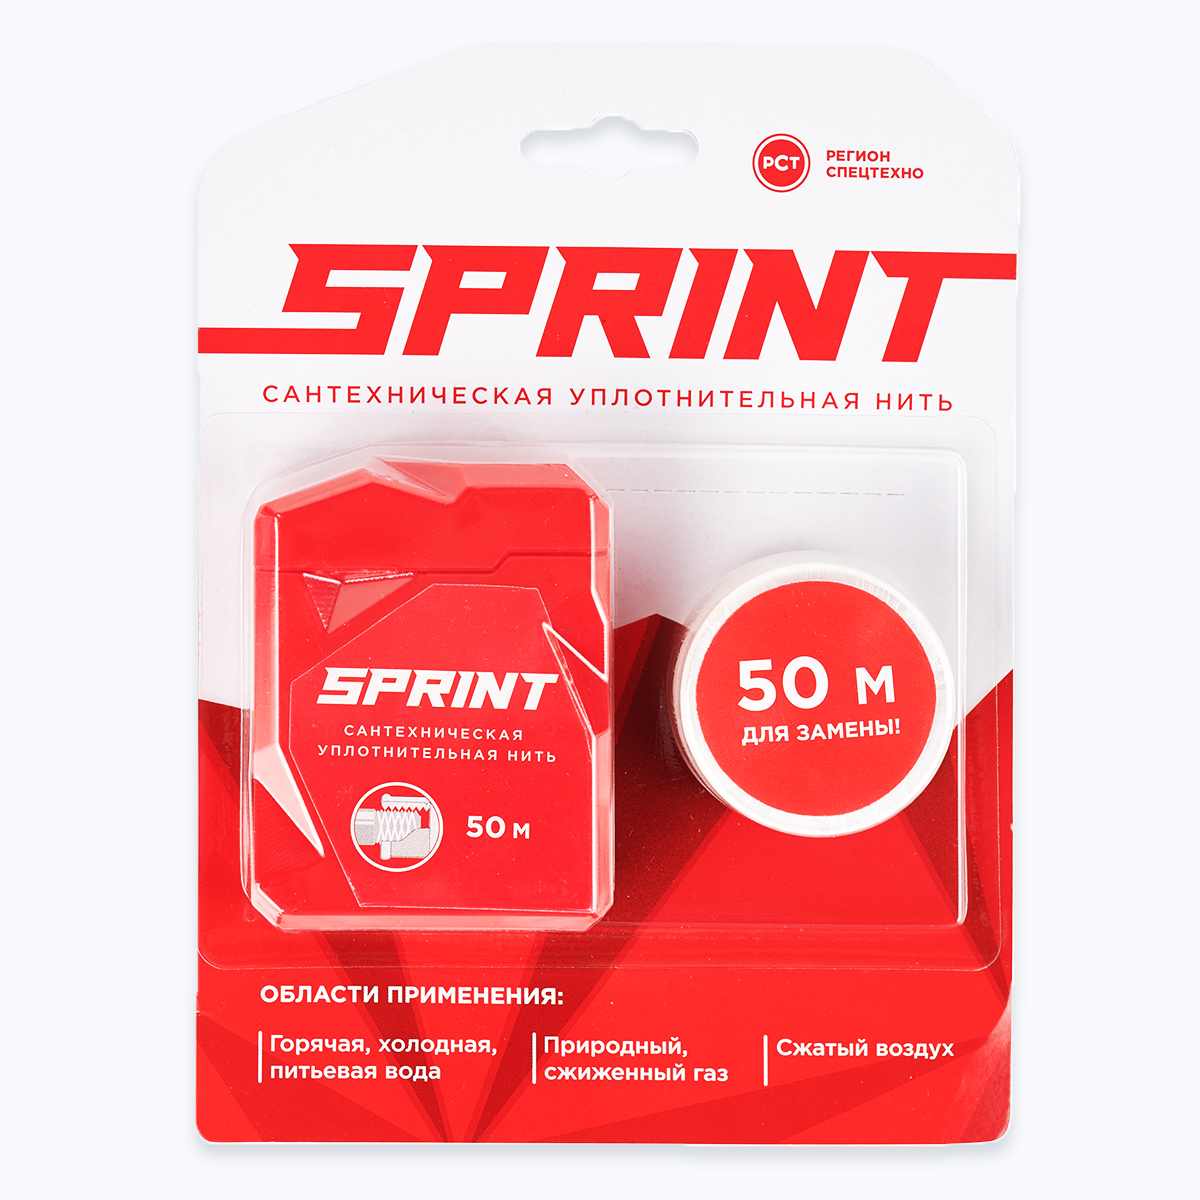 Уплотнительная нить Sprint 50м бокс+50м (в подарок),блистер